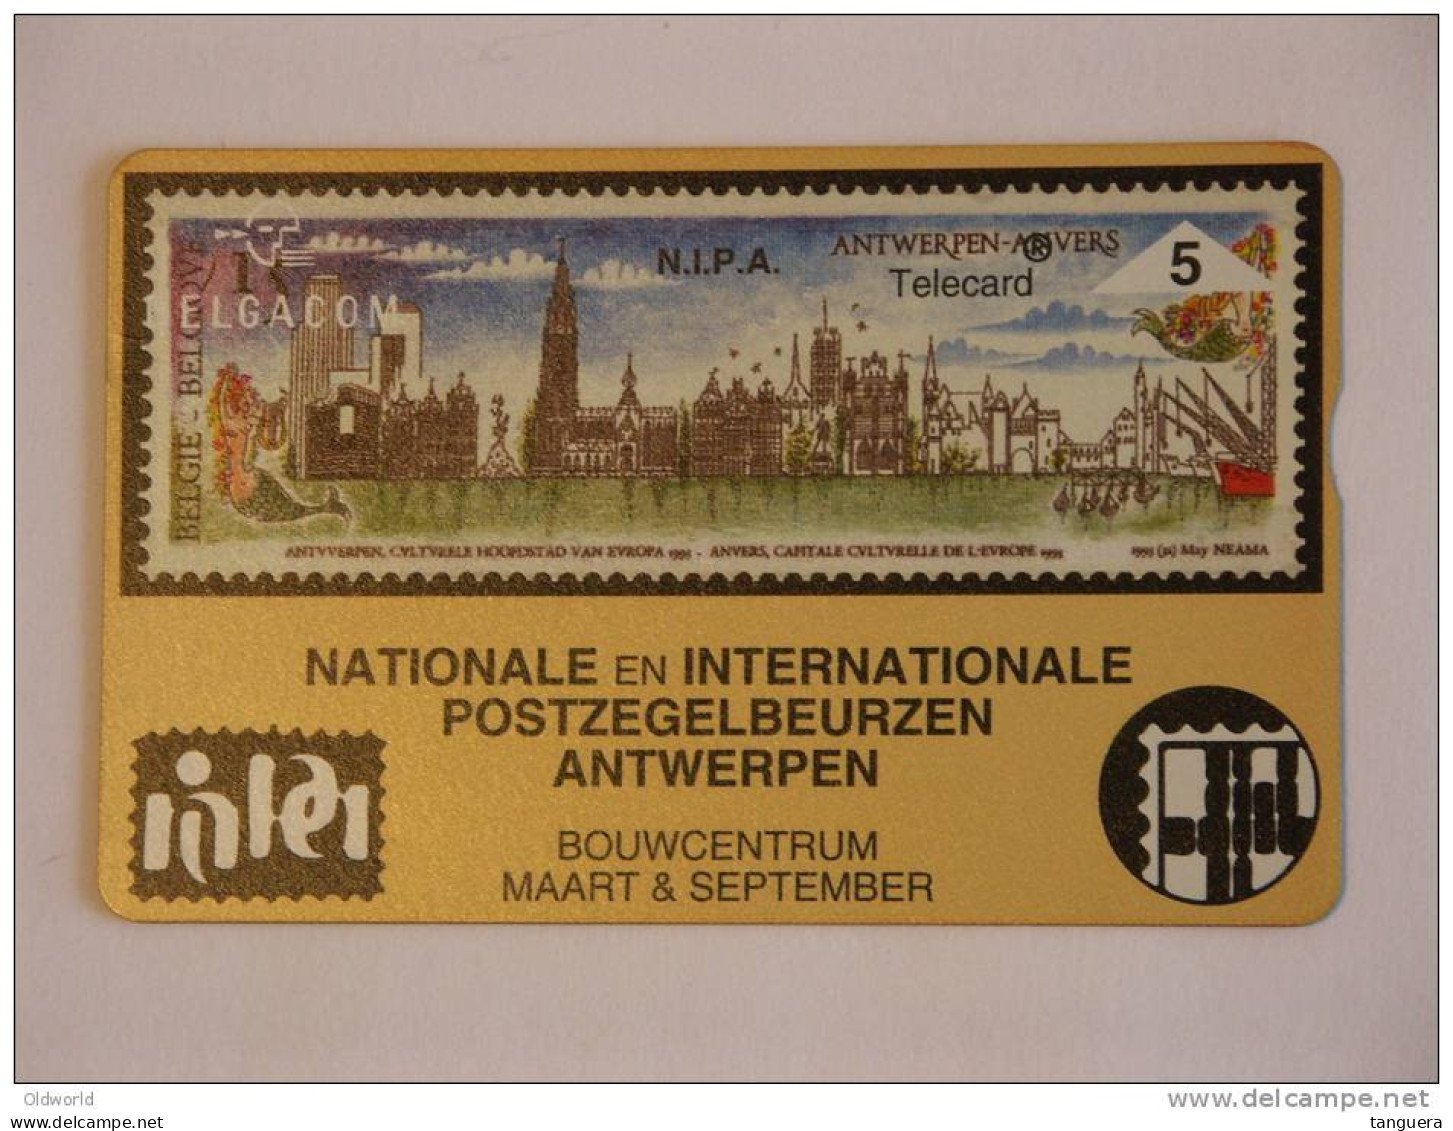 Telefoonkaart Telecard Belgacom Belgique België Privee N.I.P.A Beurs Bourse Timbre Postzegels Mint - Senza Chip